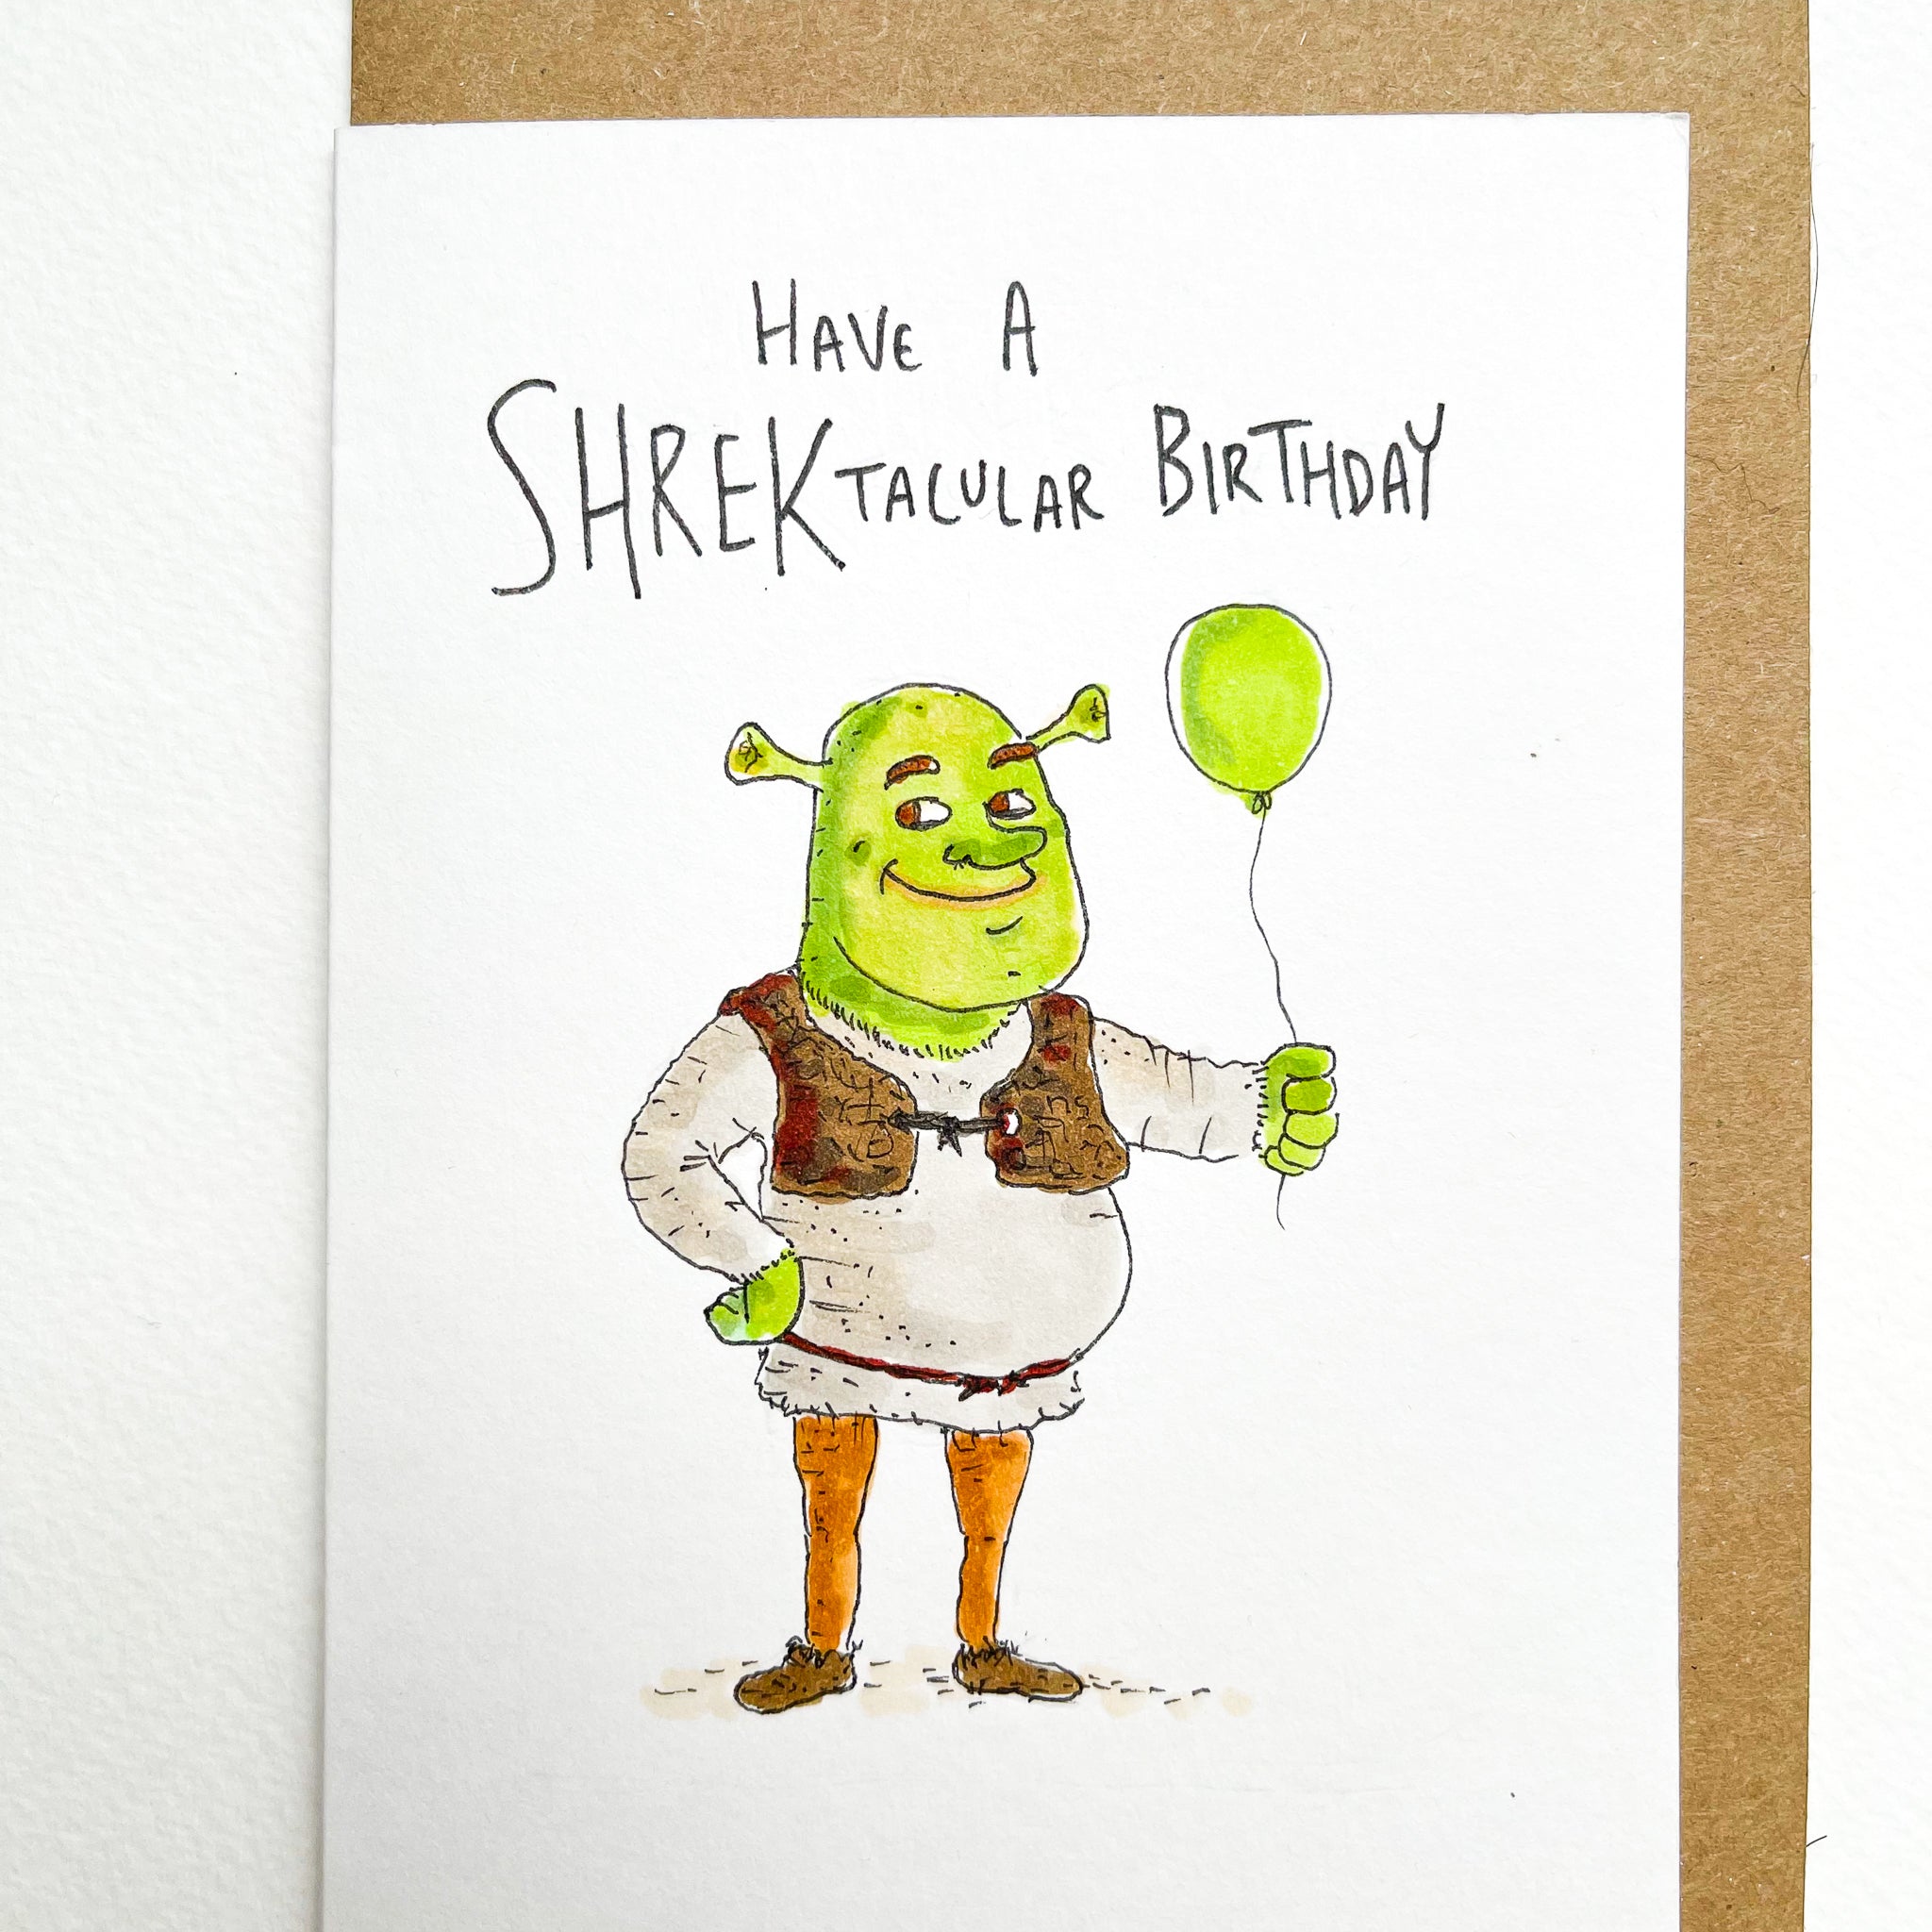 Have a Shrektacular Birthday - Well Drawn